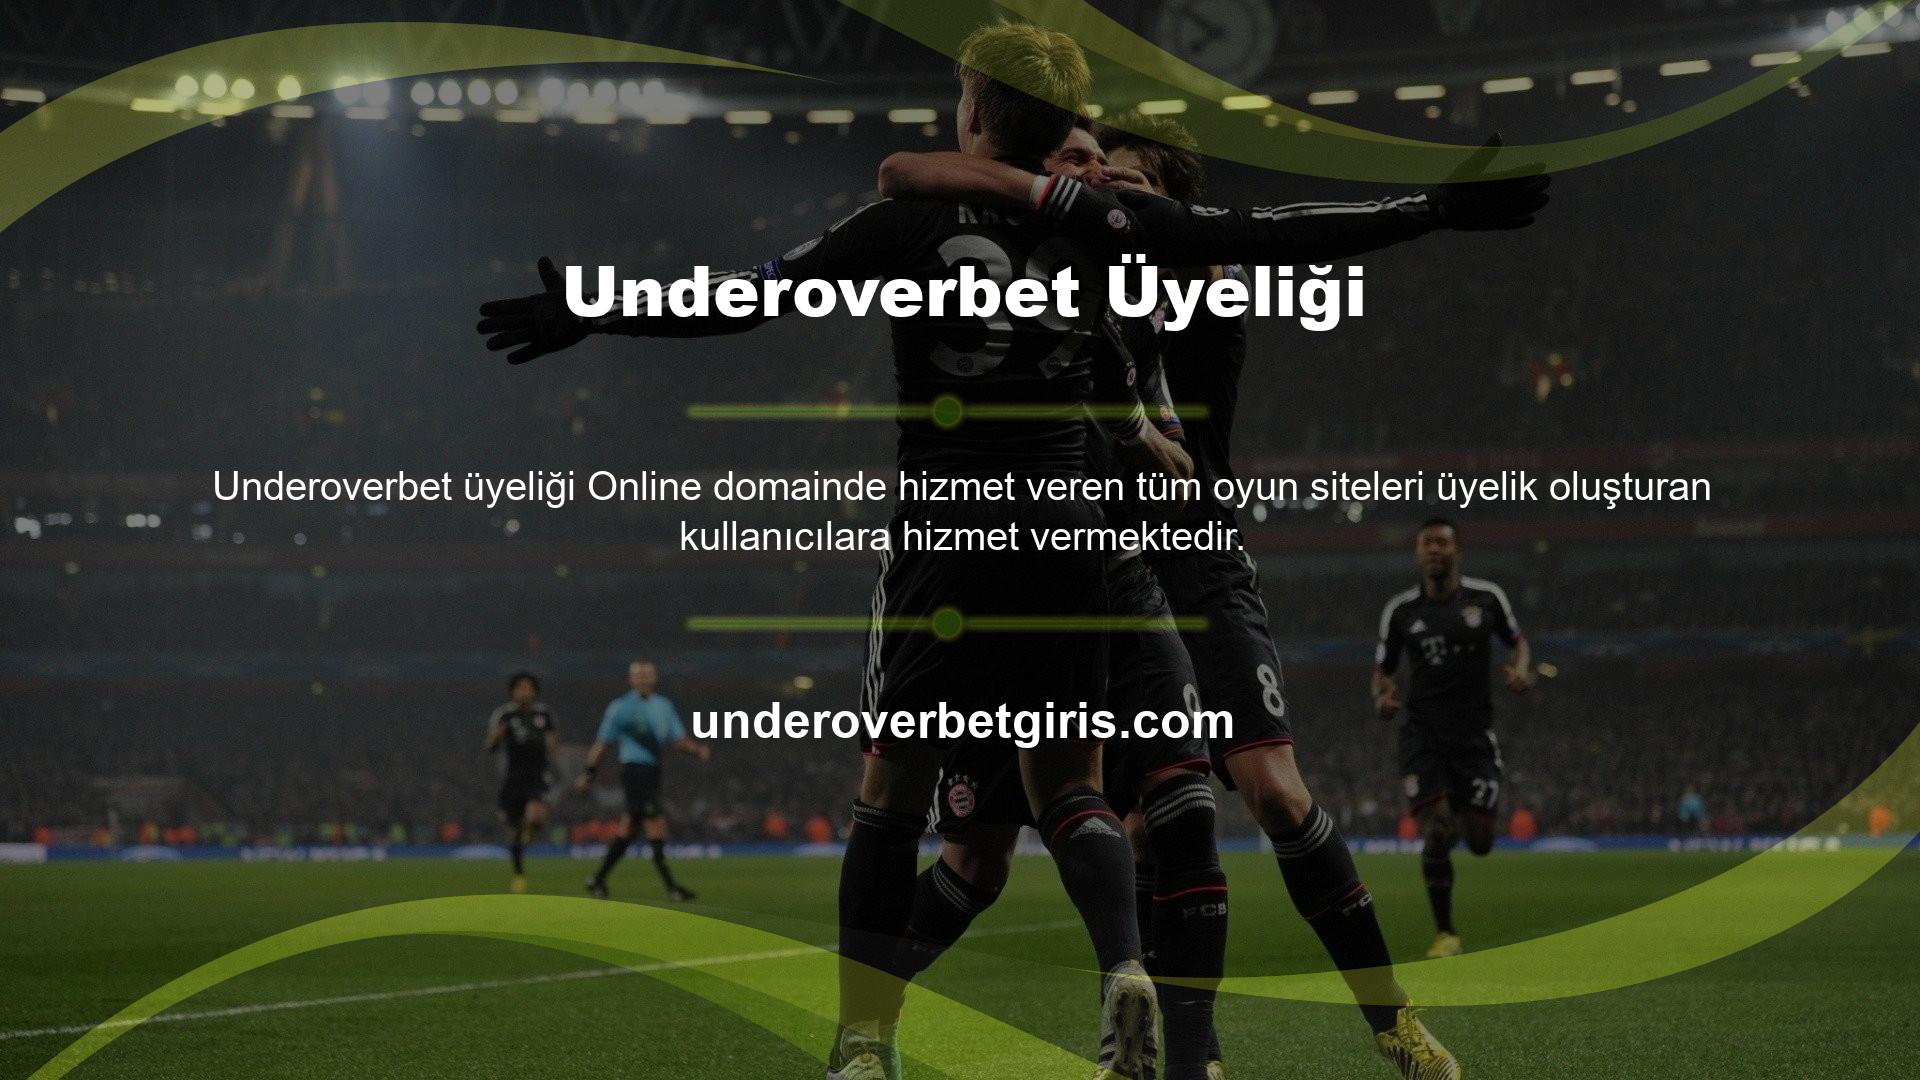 Underoverbet Gaming web sitesi, üyelik oluşturma süreci için kaydolma seçeneğiyle üyelik formlarına kolay erişim sağlar